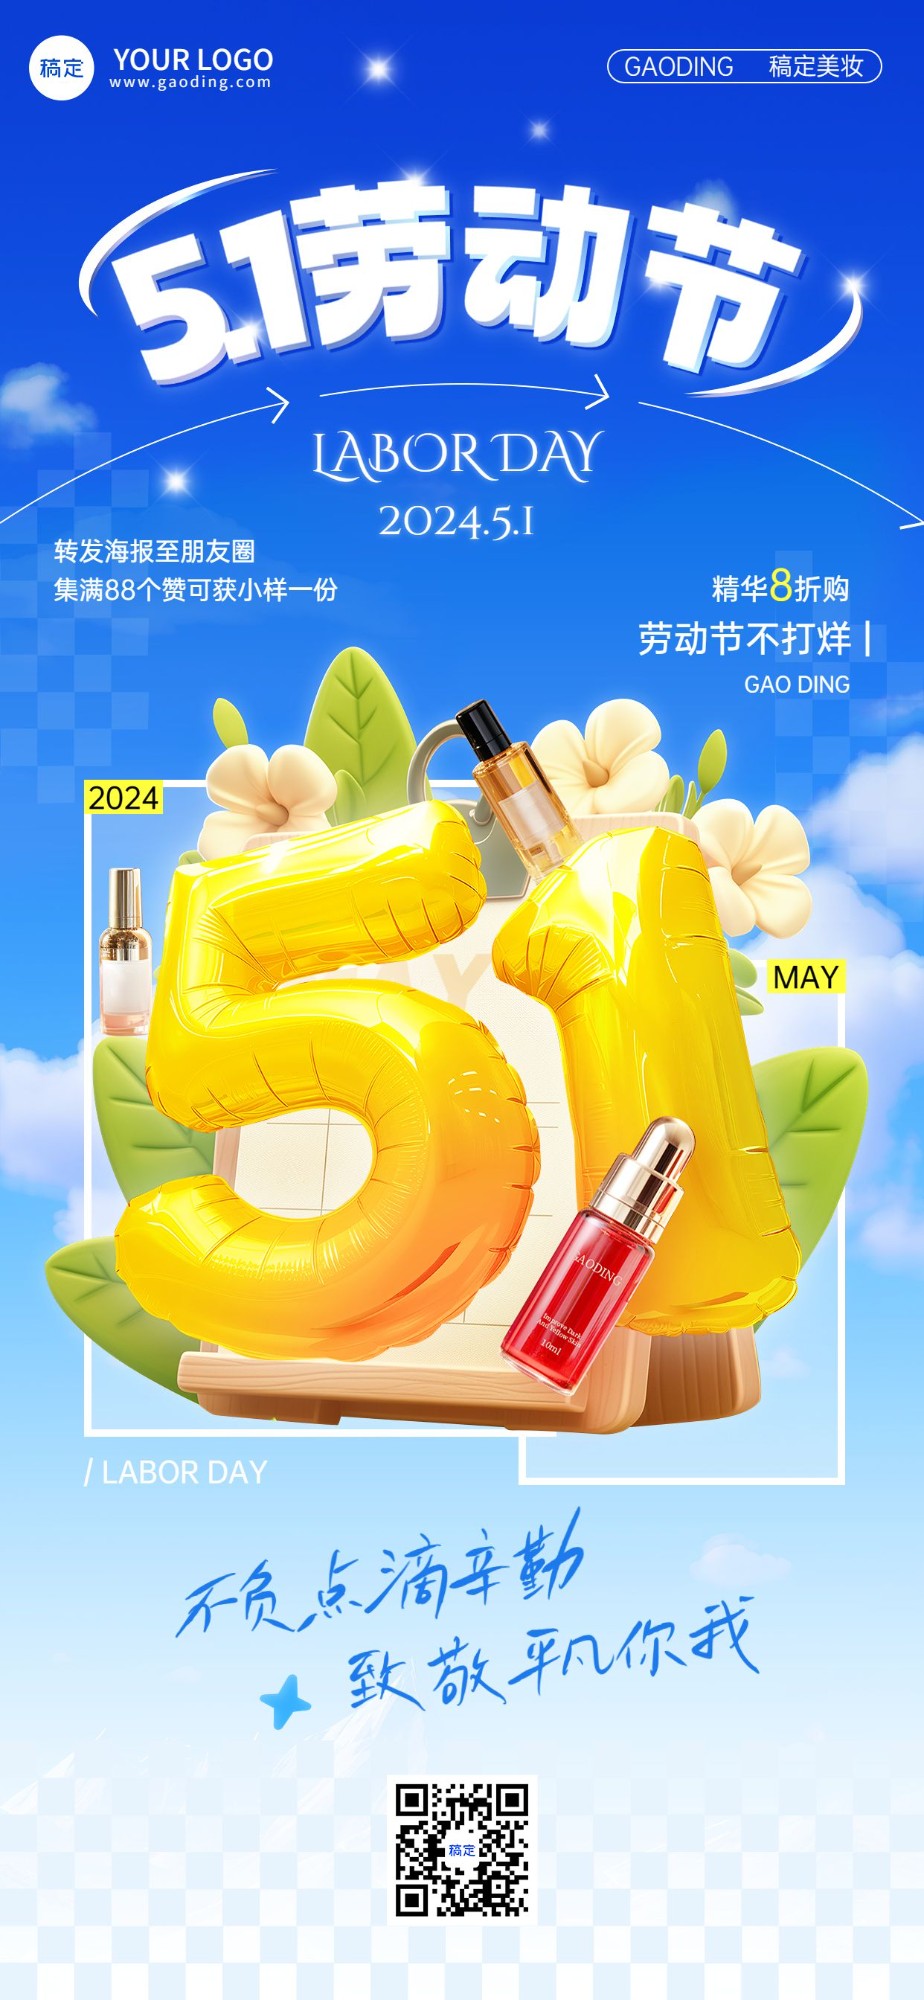 劳动节美容美妆软营销祝福产品展示3D大字全屏竖版海报AIGC预览效果